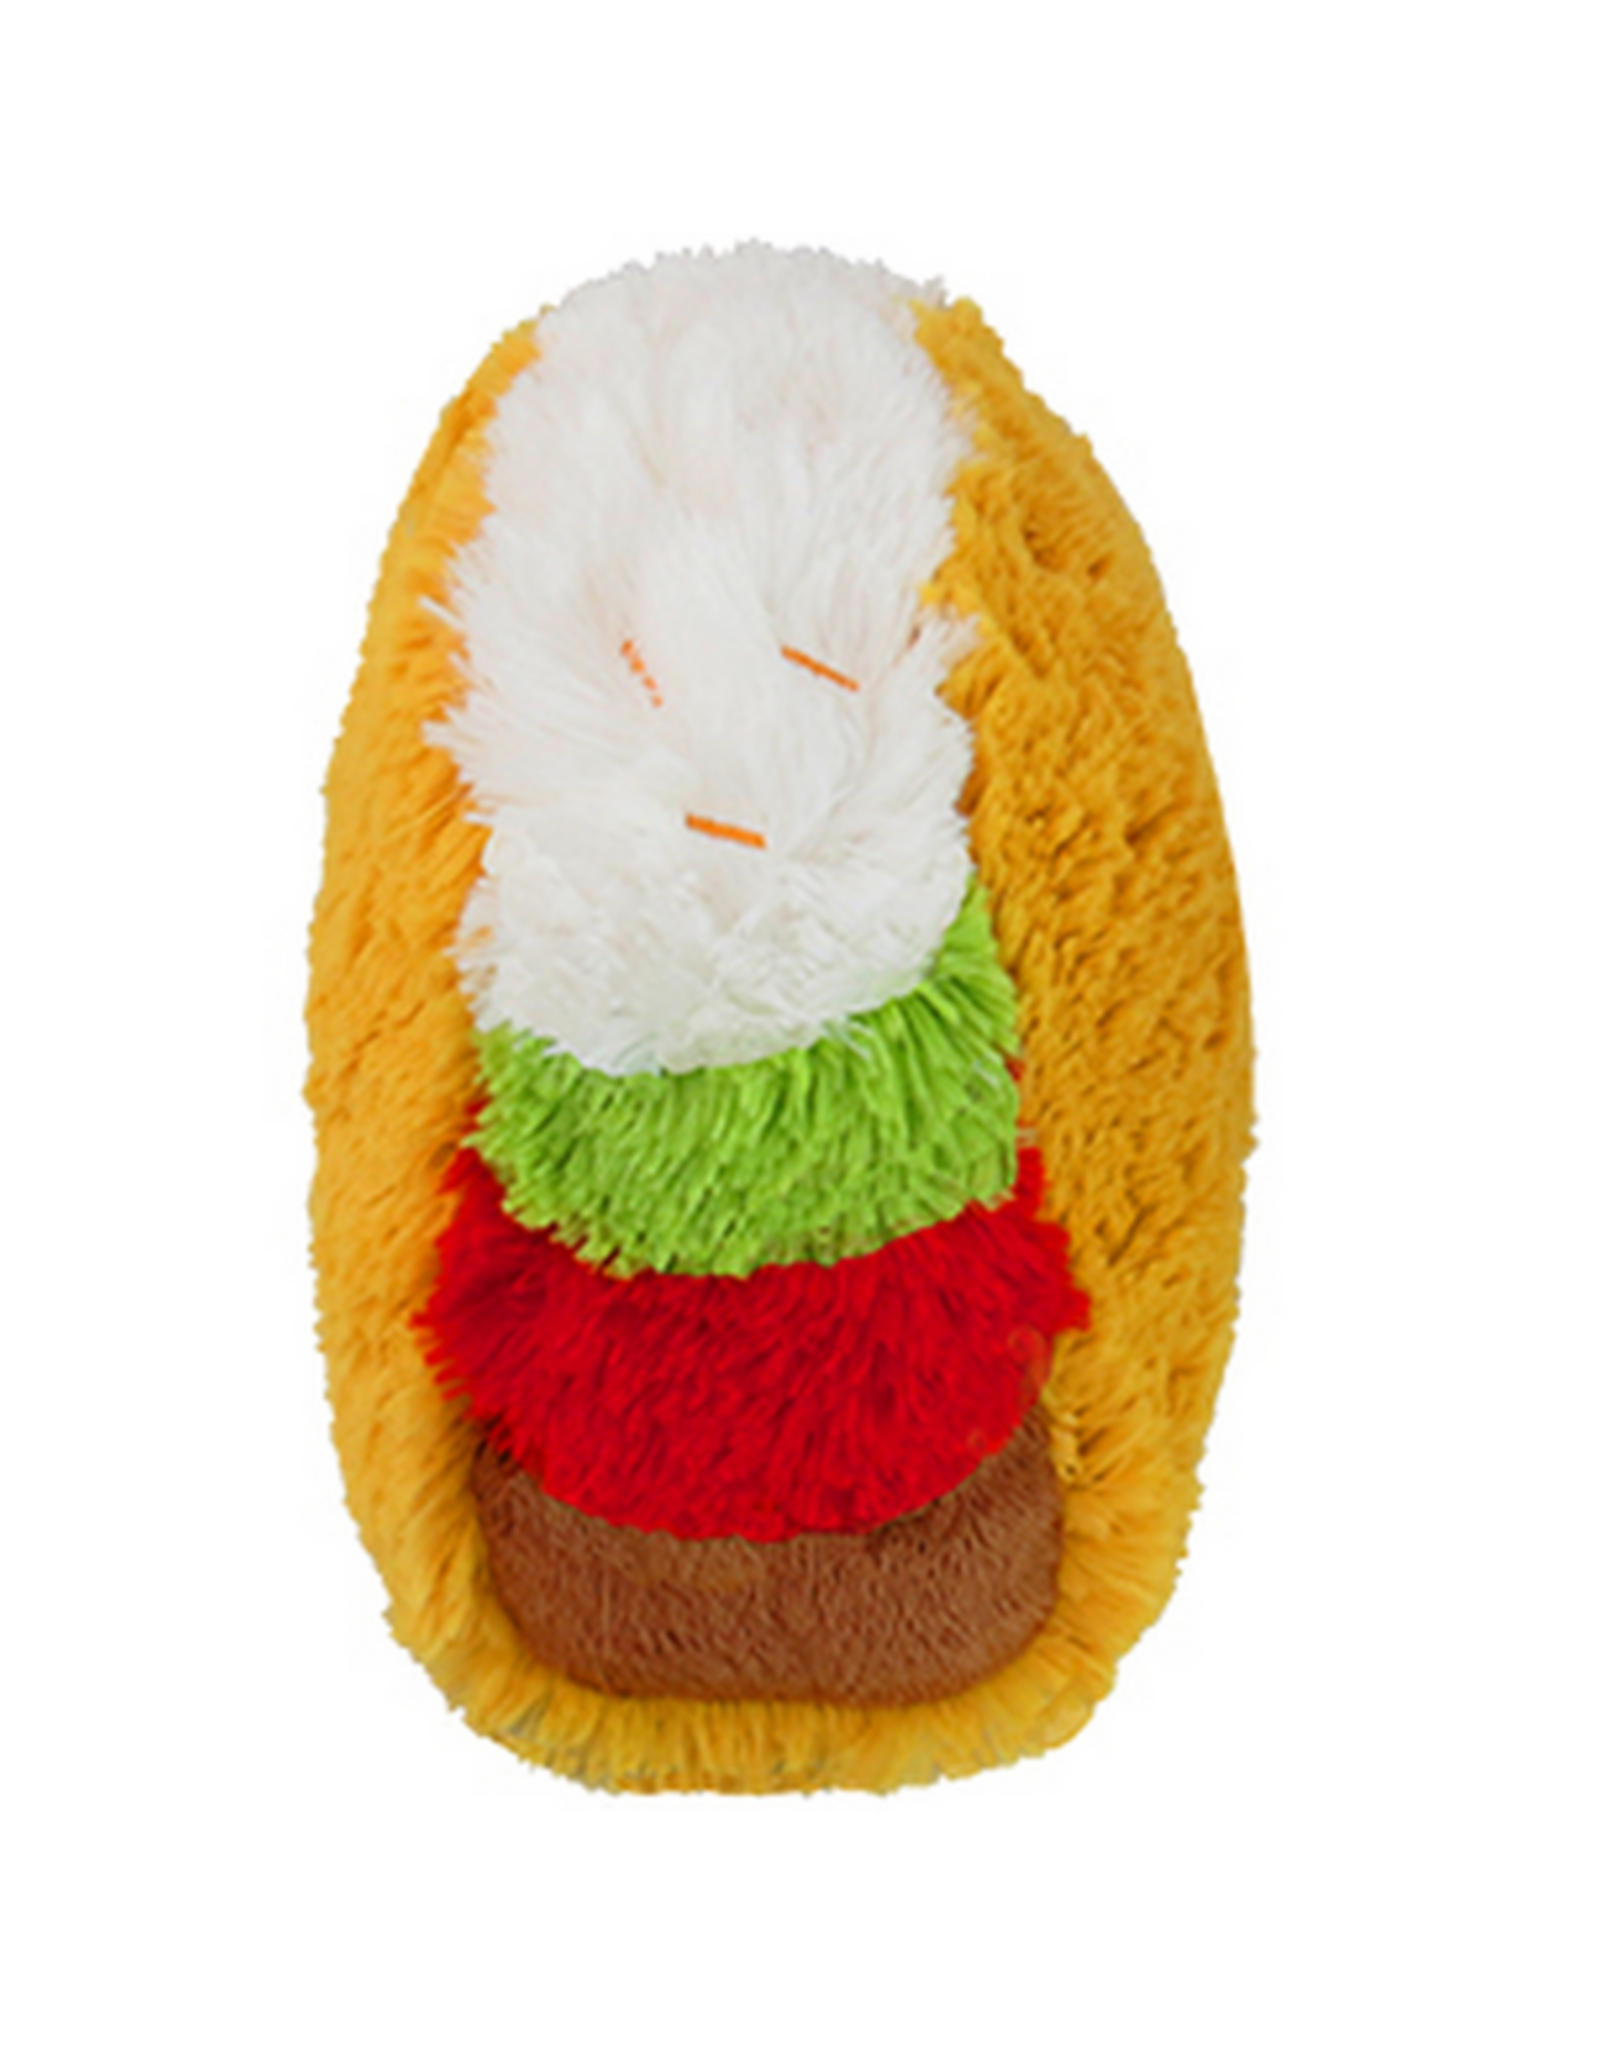 Squishable Mini Squishable: Taco